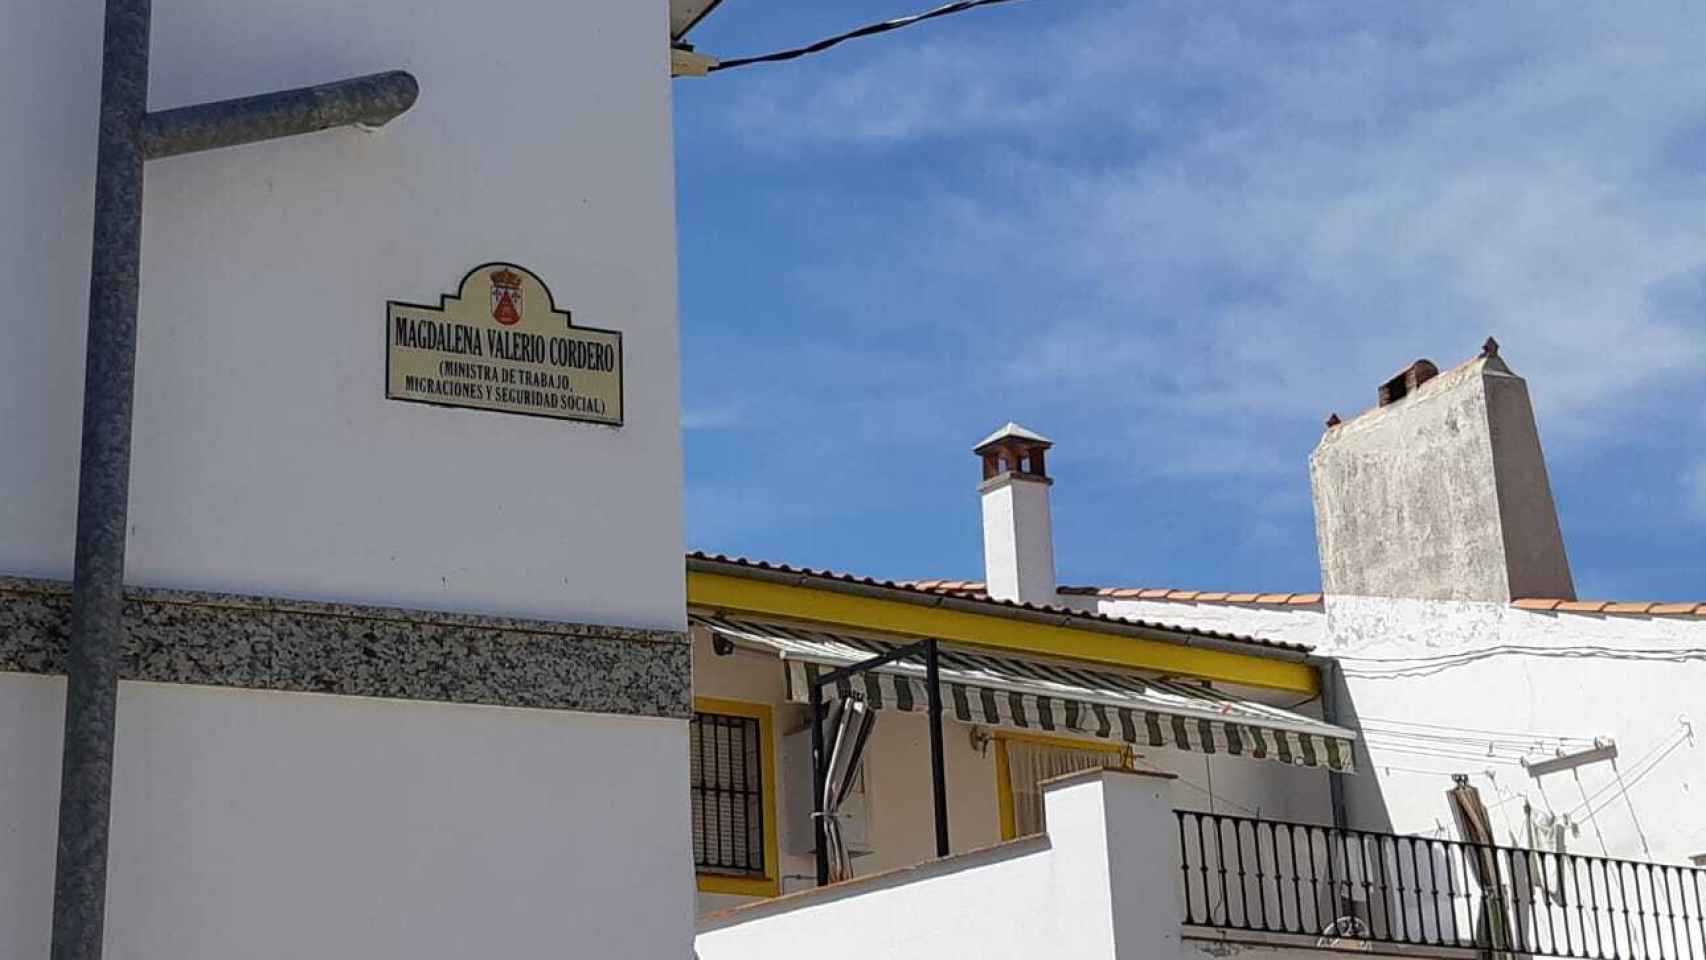 La calle Magdalena Valerio Cordero, en Torremocha, en su honor.